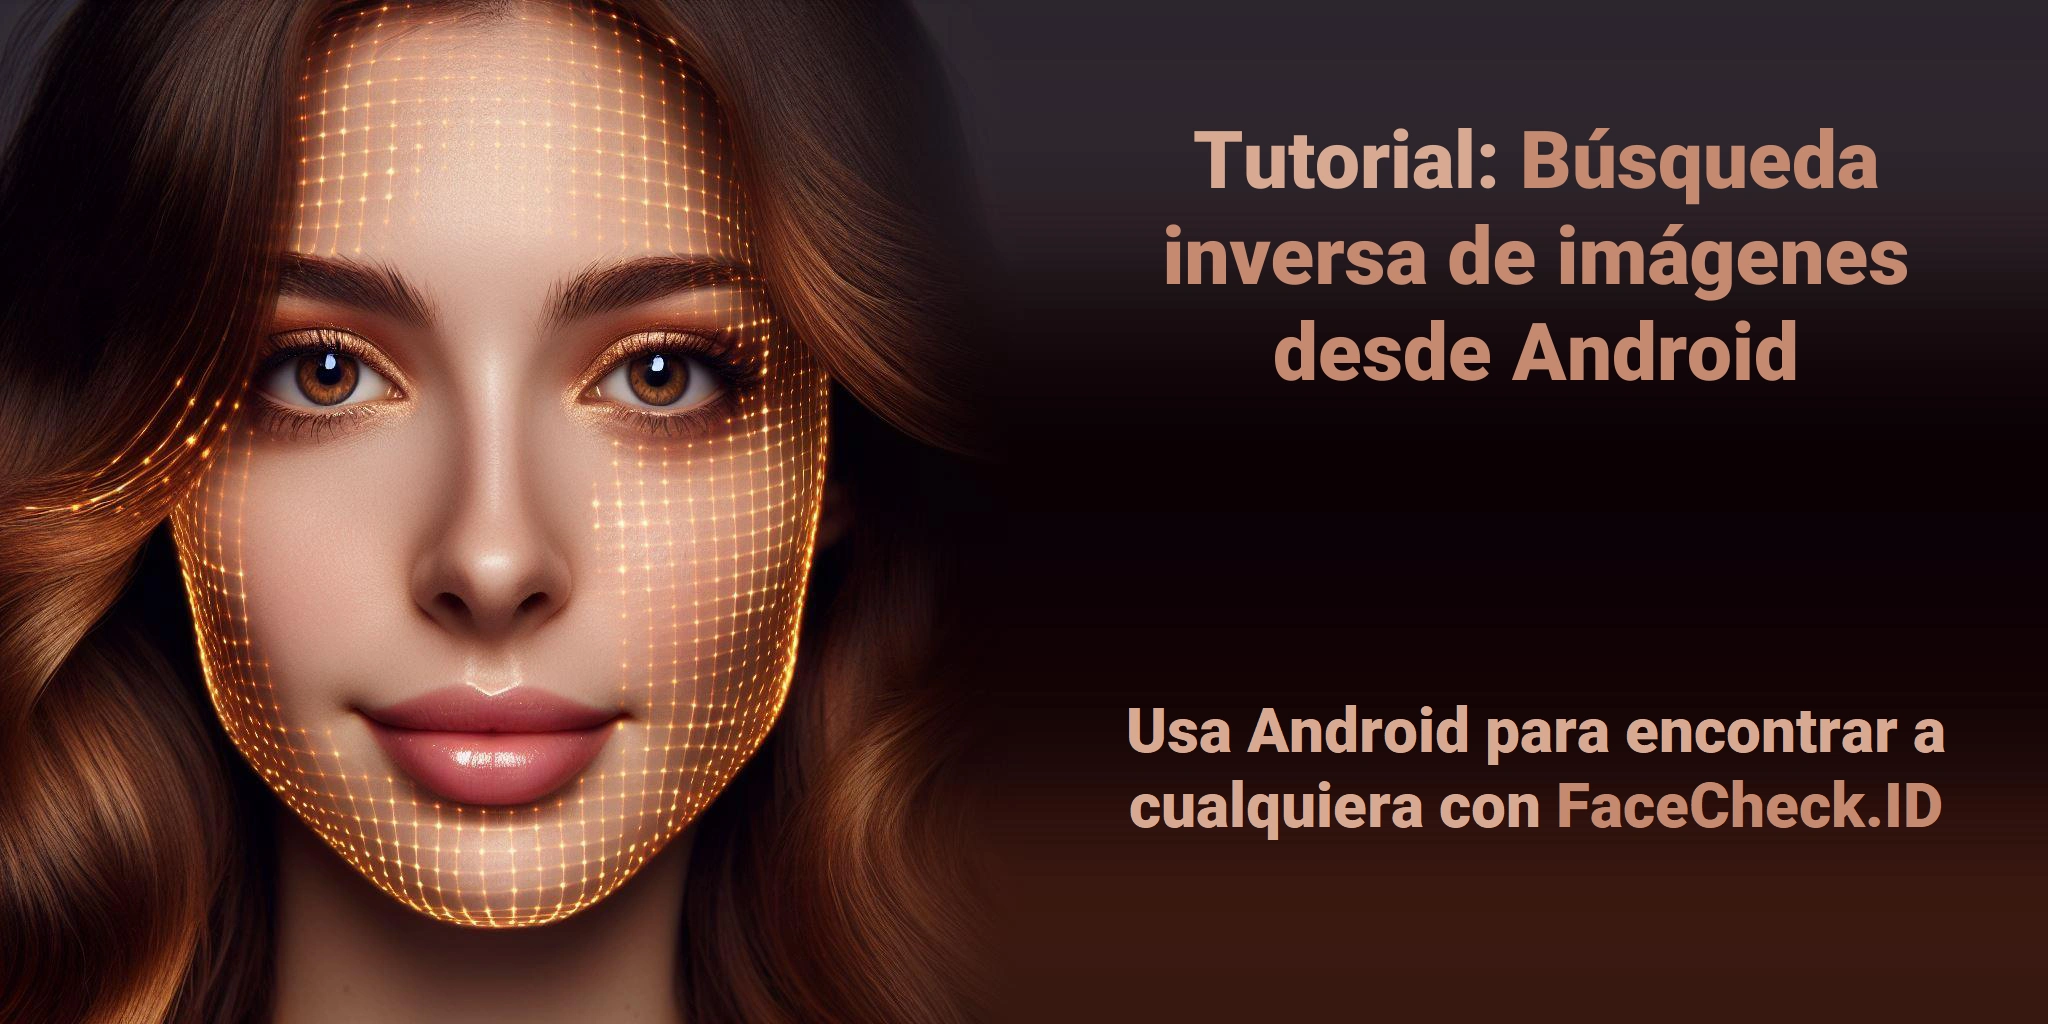 Tutorial: Búsqueda inversa de imágenes desde Android Usa Android para encontrar a cualquiera con FaceCheck.ID